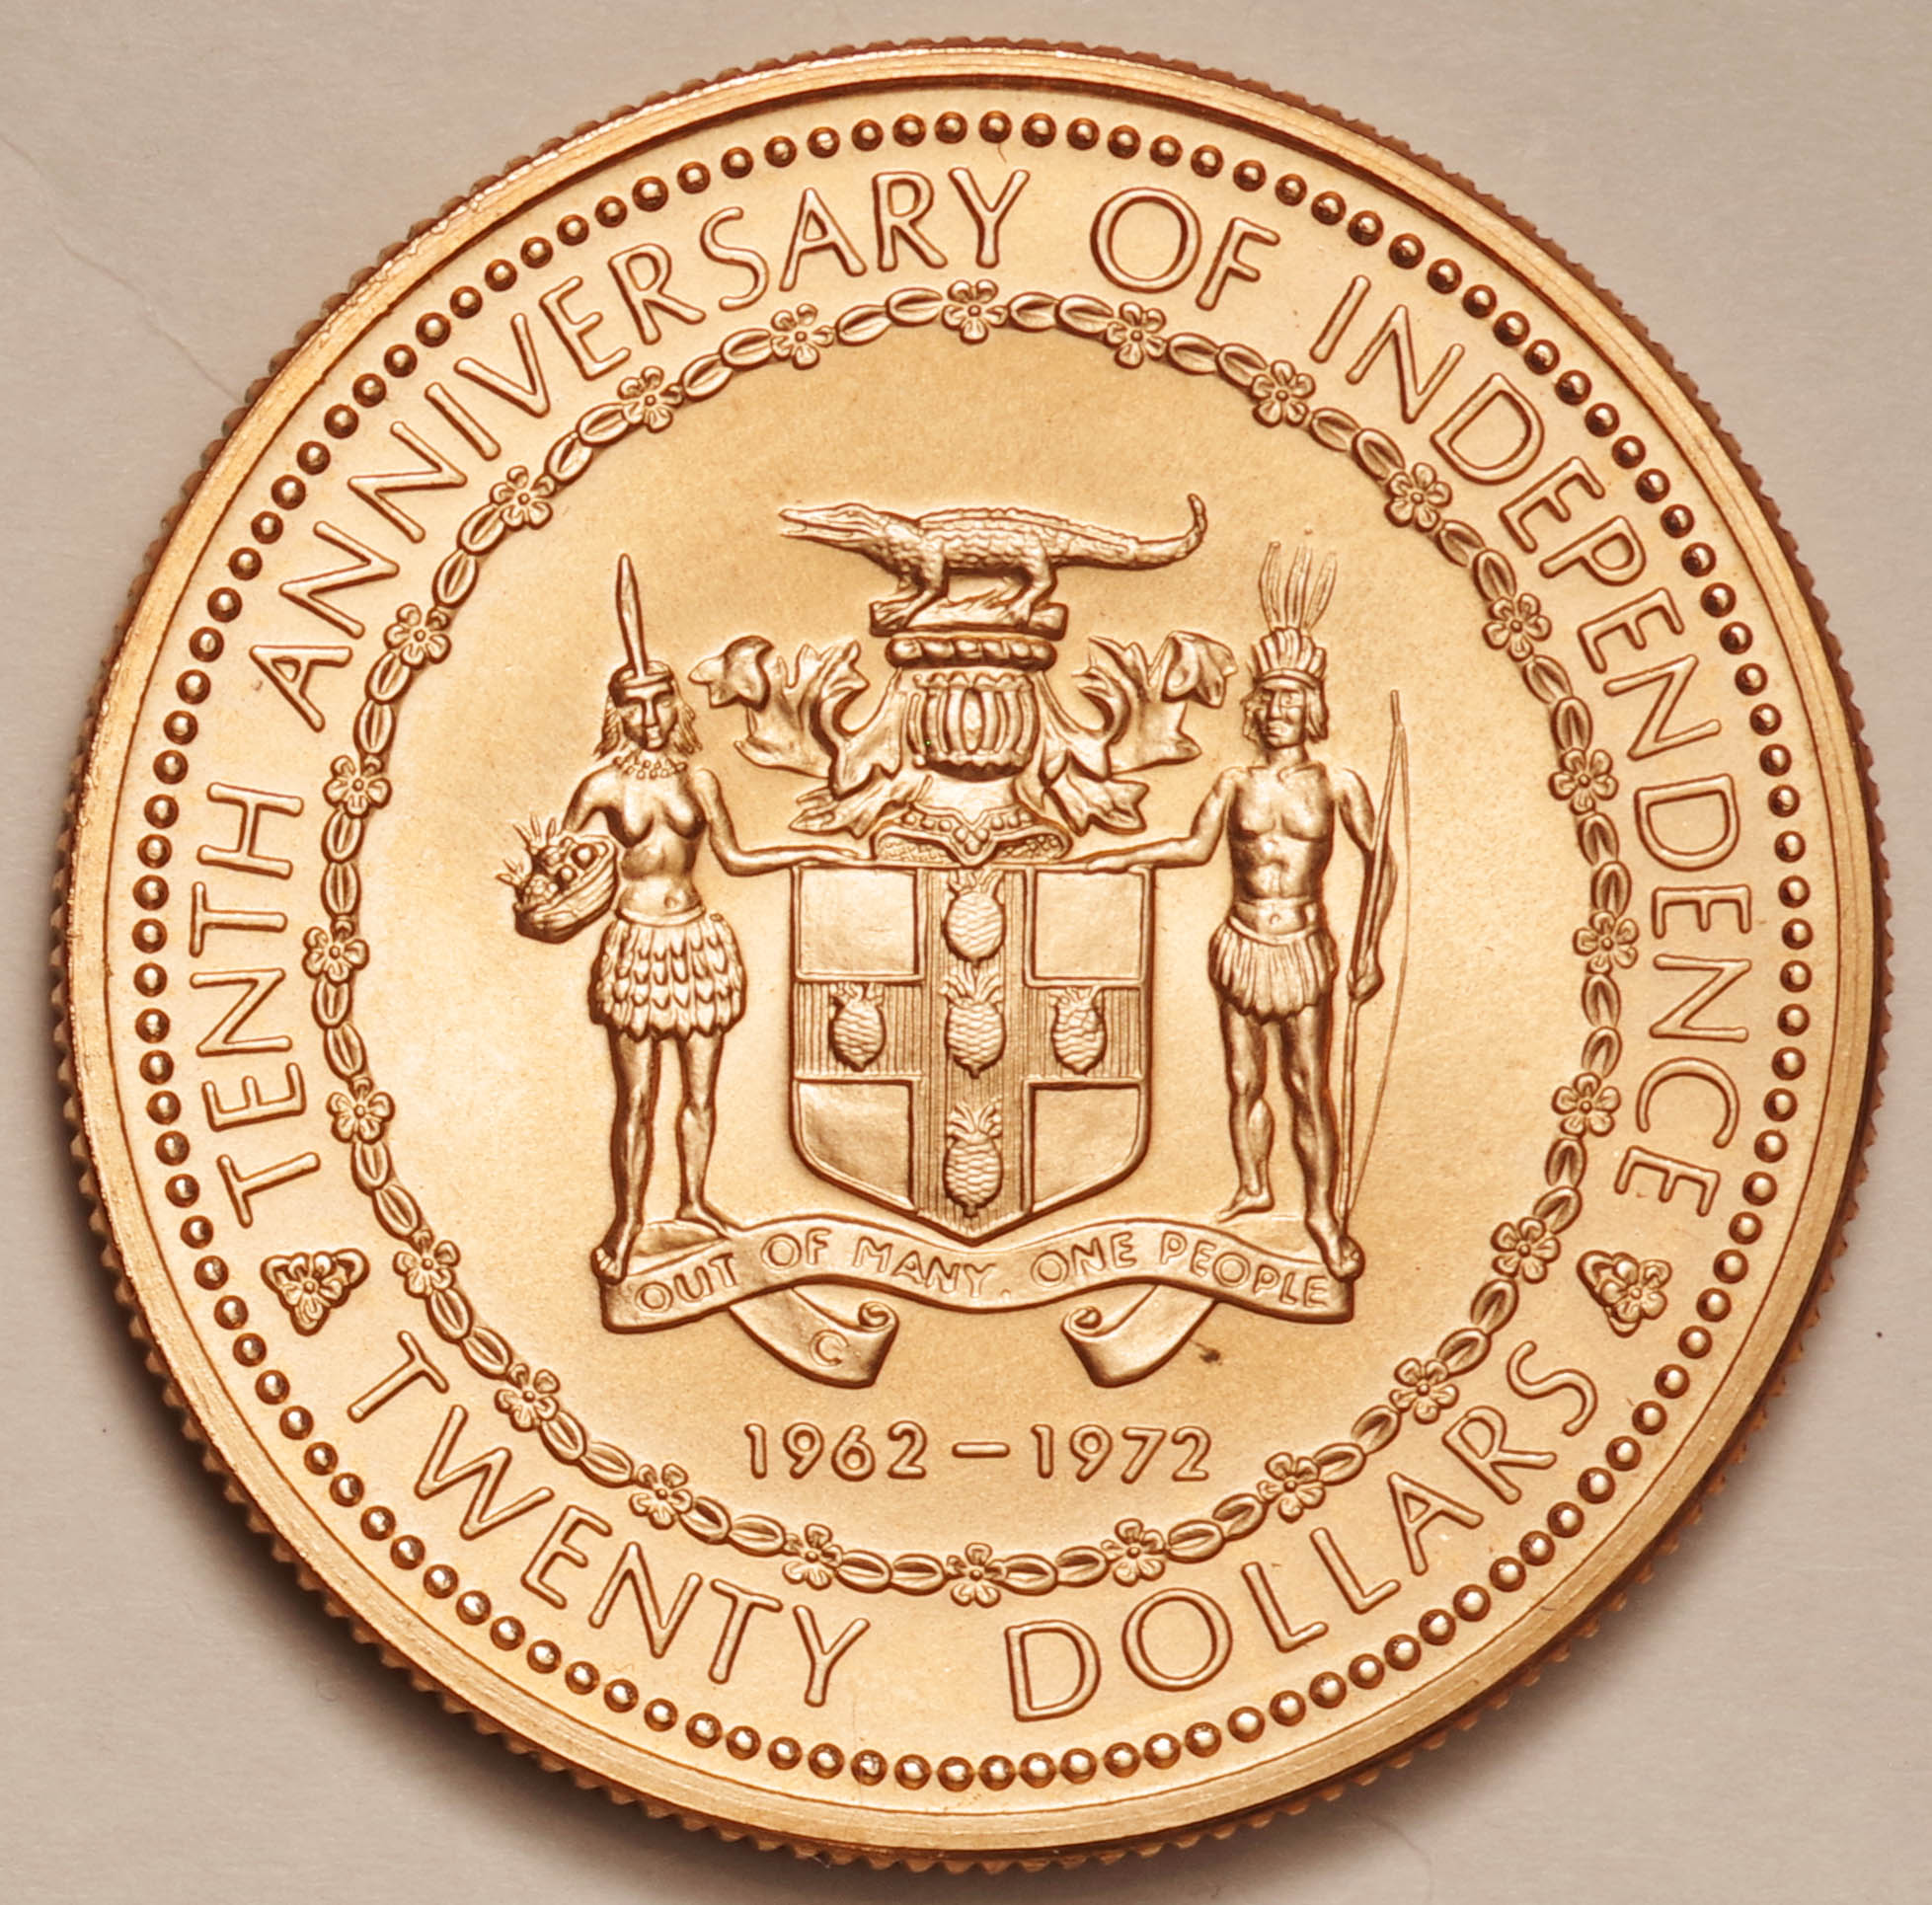 ジャマイカ 金貨(.500) 独立10周年記念20ドル金貨 1972年-